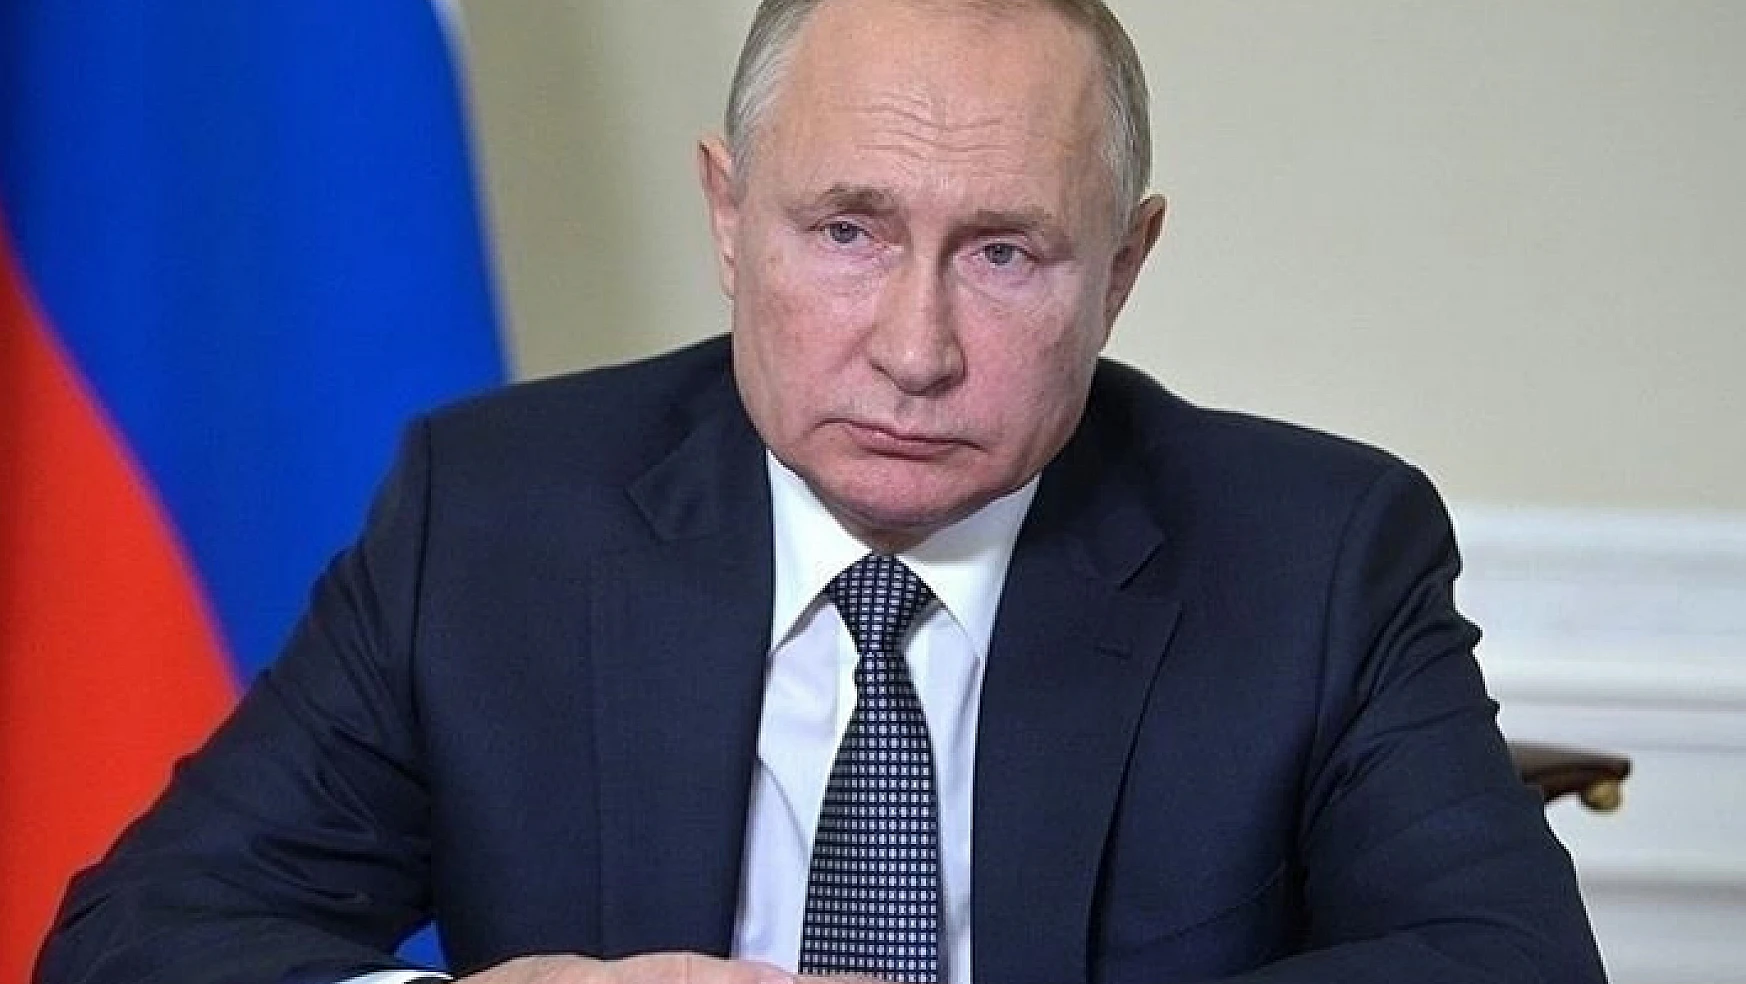 Putin: Uluslararası ticaret krizde